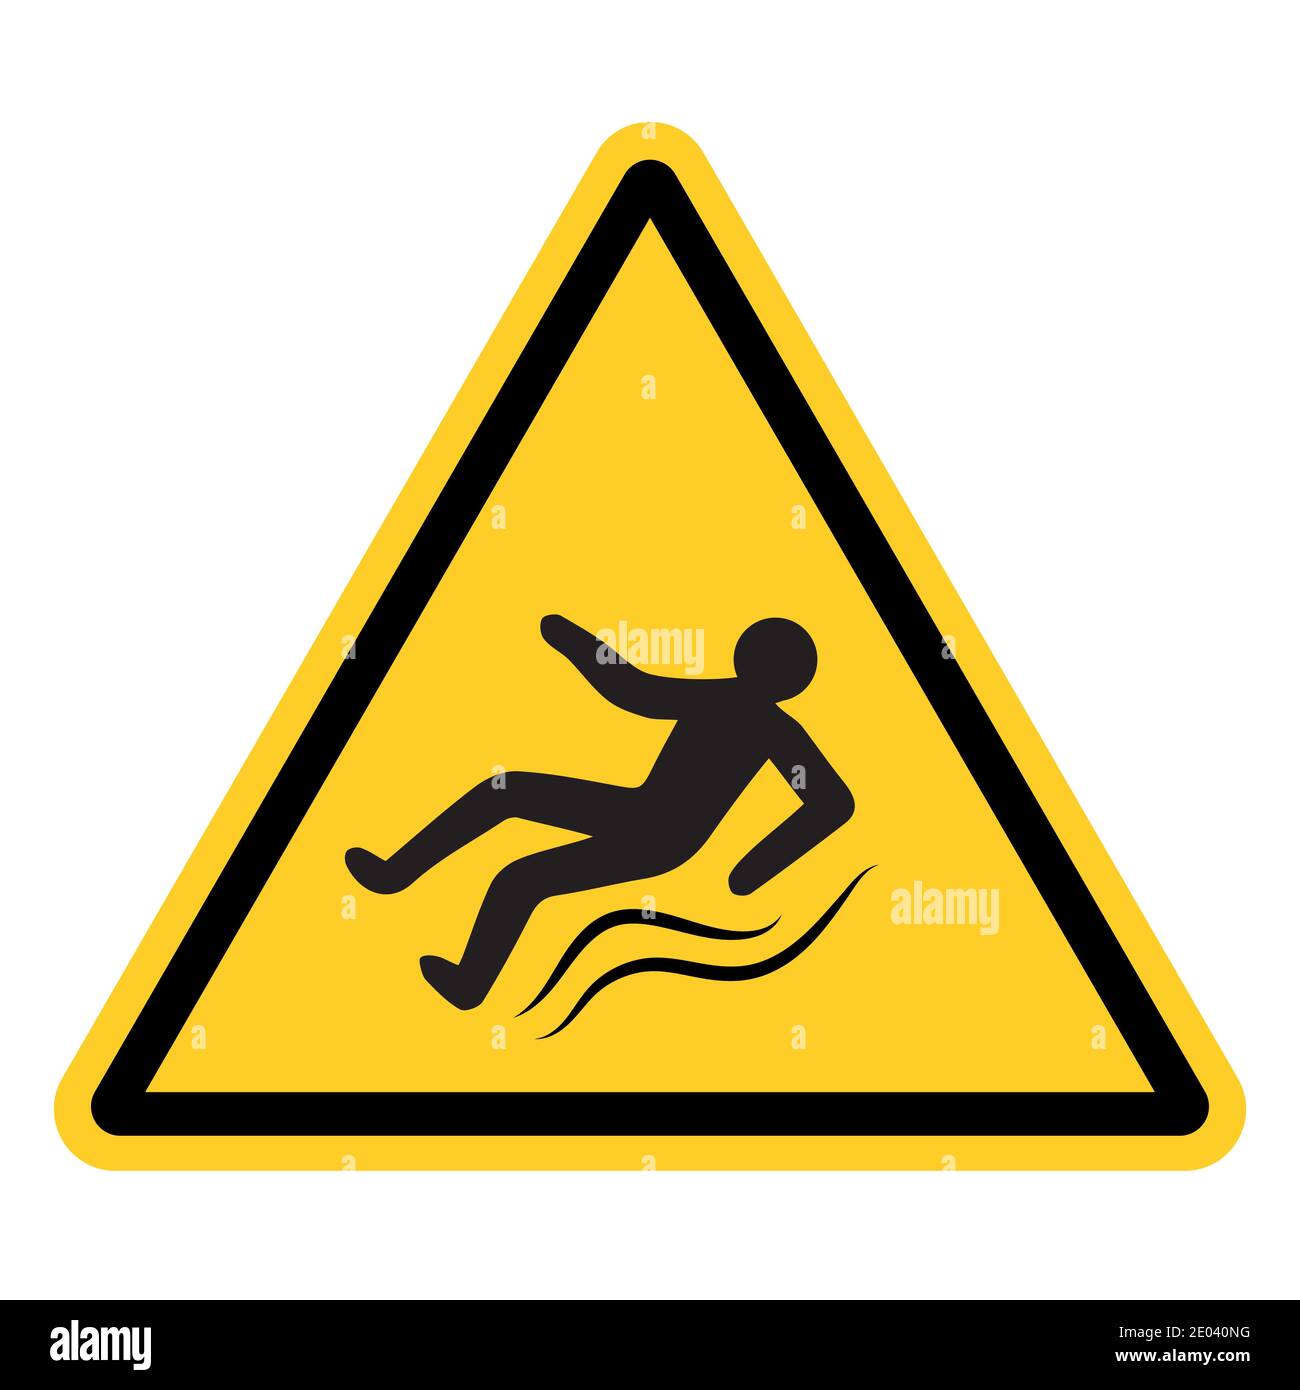 Señal de advertencia amarilla con una persona que se desliza, señal vectorial de hielo, carretera resbaladiza, advertencias de peligro que se pueden lesionar en una acera resbaladiza Ilustración del Vector